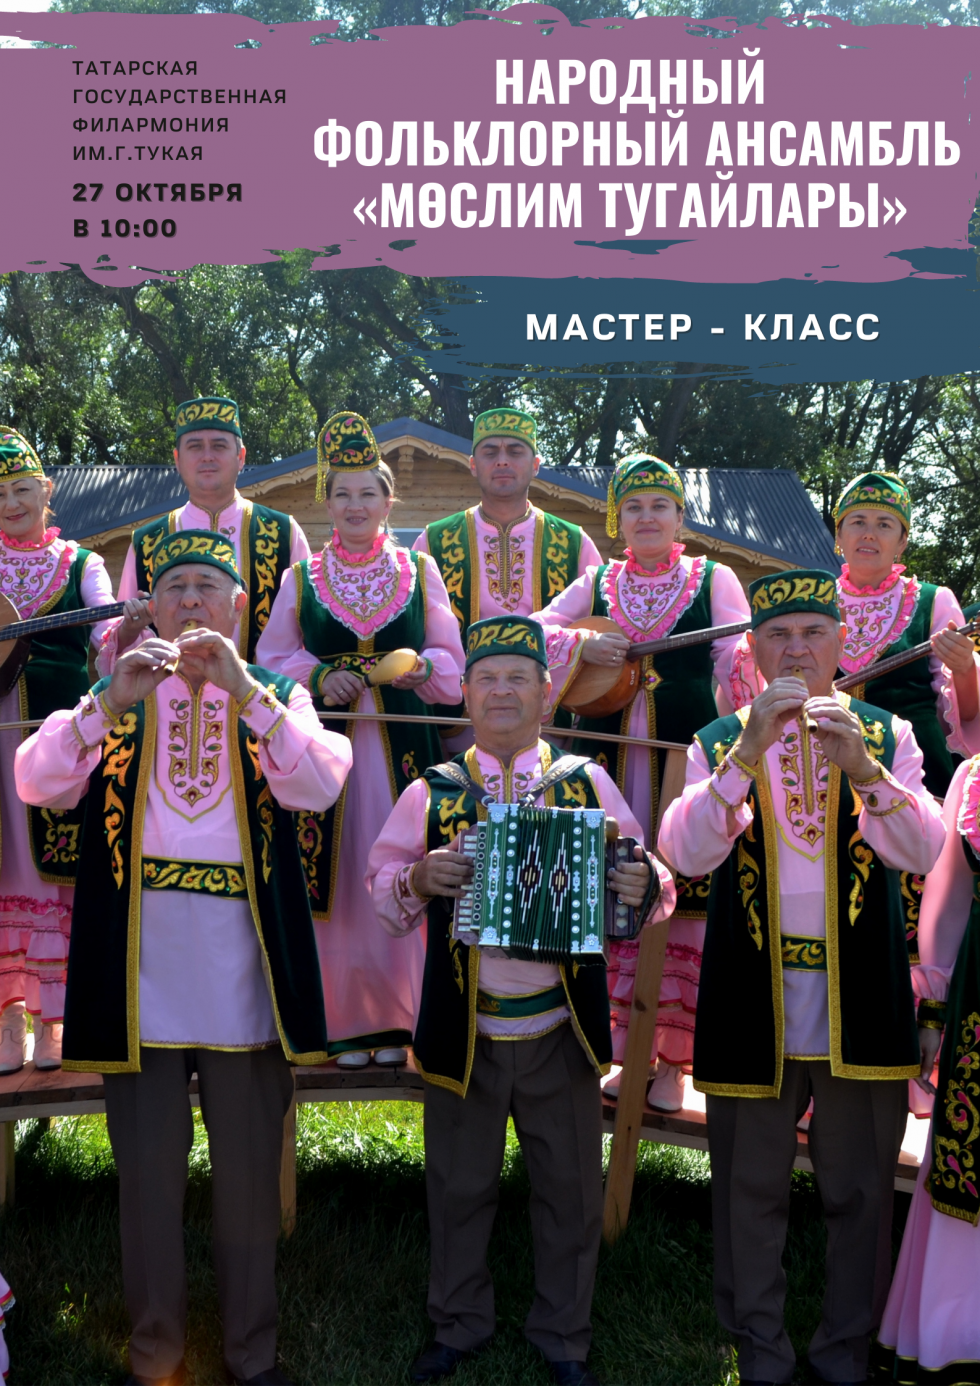 В Татарской филармонии состоится мастер-класс фольклорного ансамбля «Мөслим тугайлары»